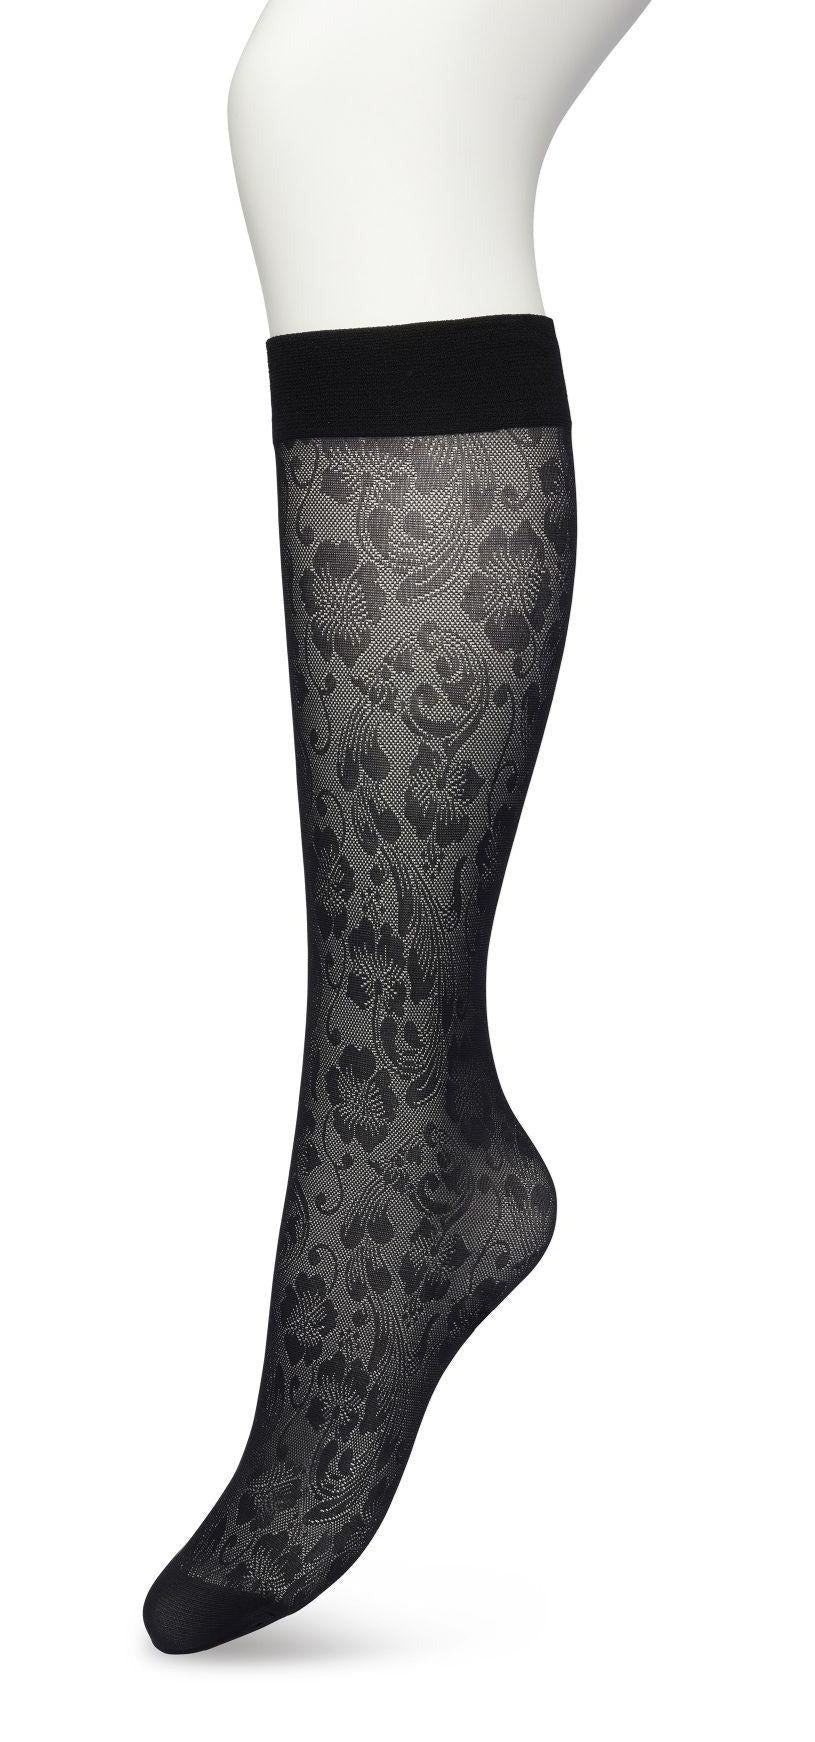 Bonnie Doon BP221803 Fancy Flowers Knee-Highs - Semi-sheer floral lace style patterned knee-high socks in black.